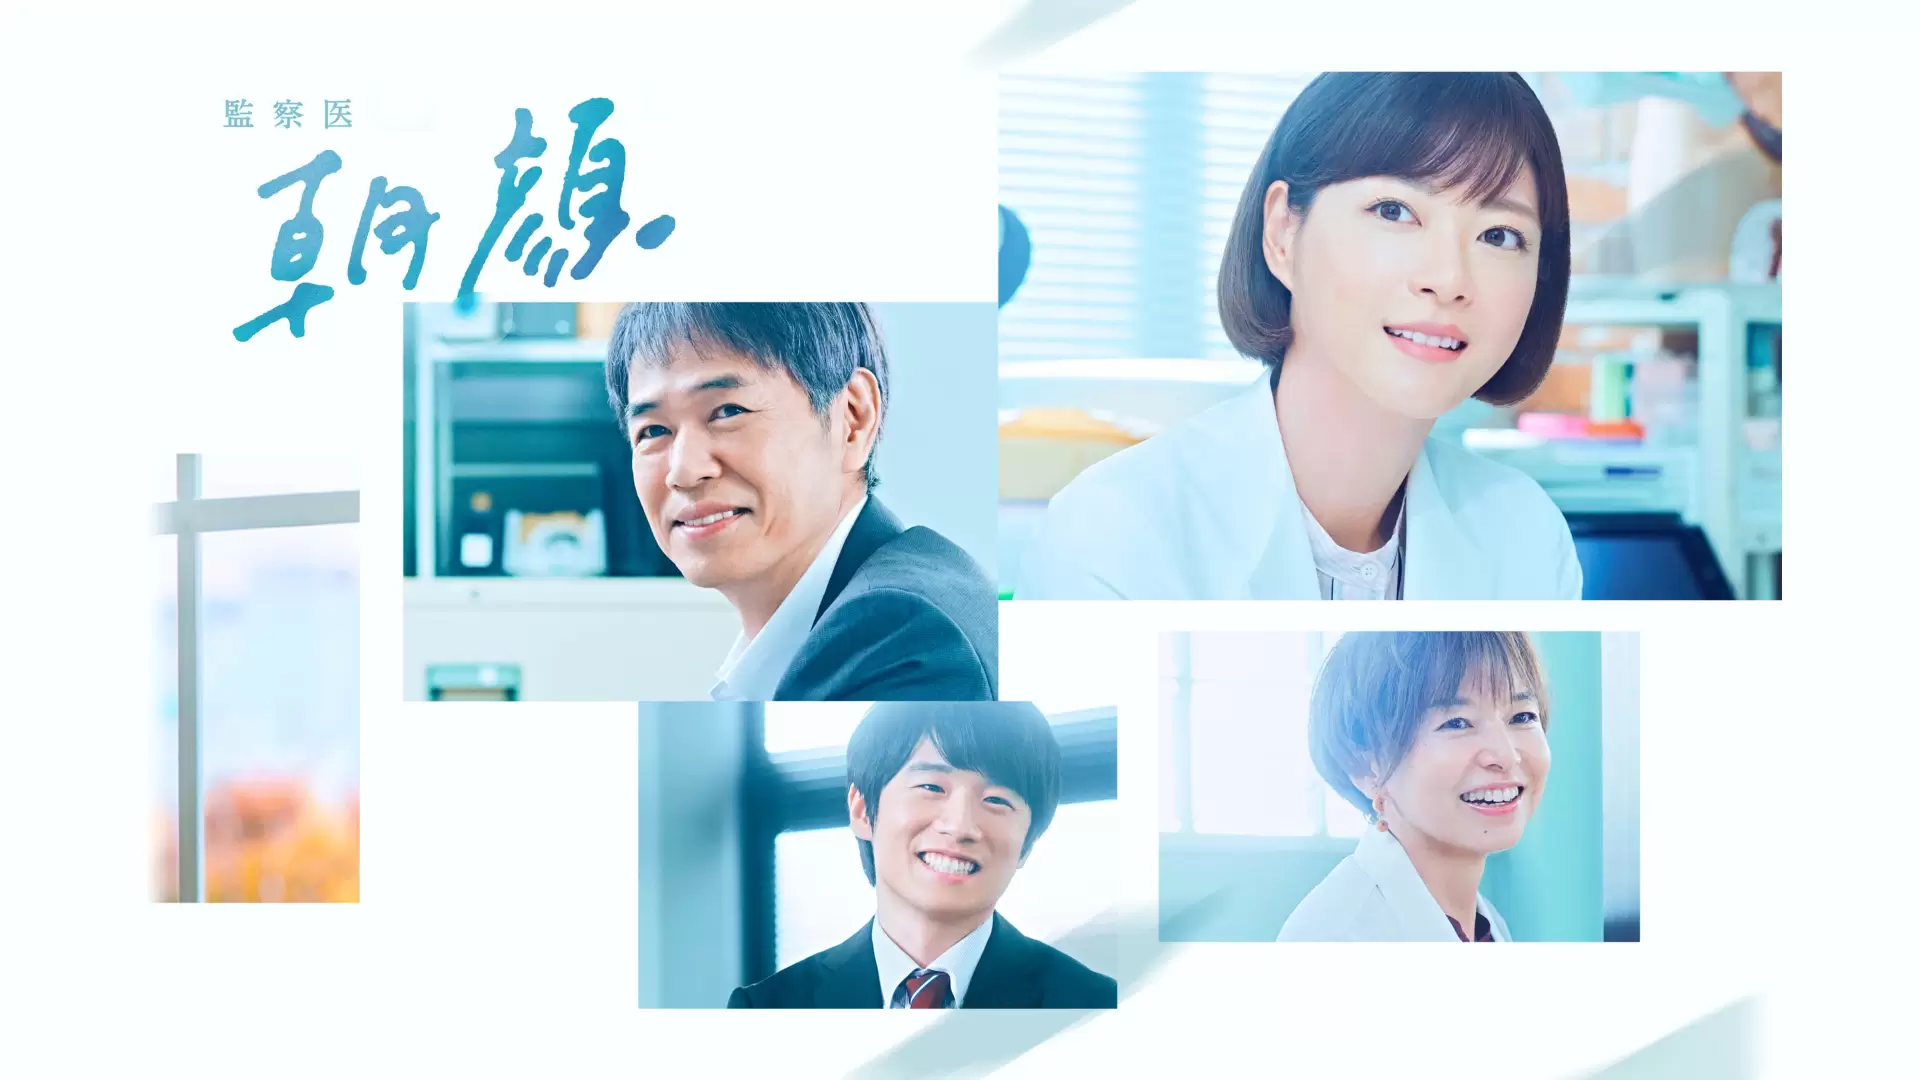 دانلود سریال Medical Examiner Asagao (Kansatsui Asagao) 2019